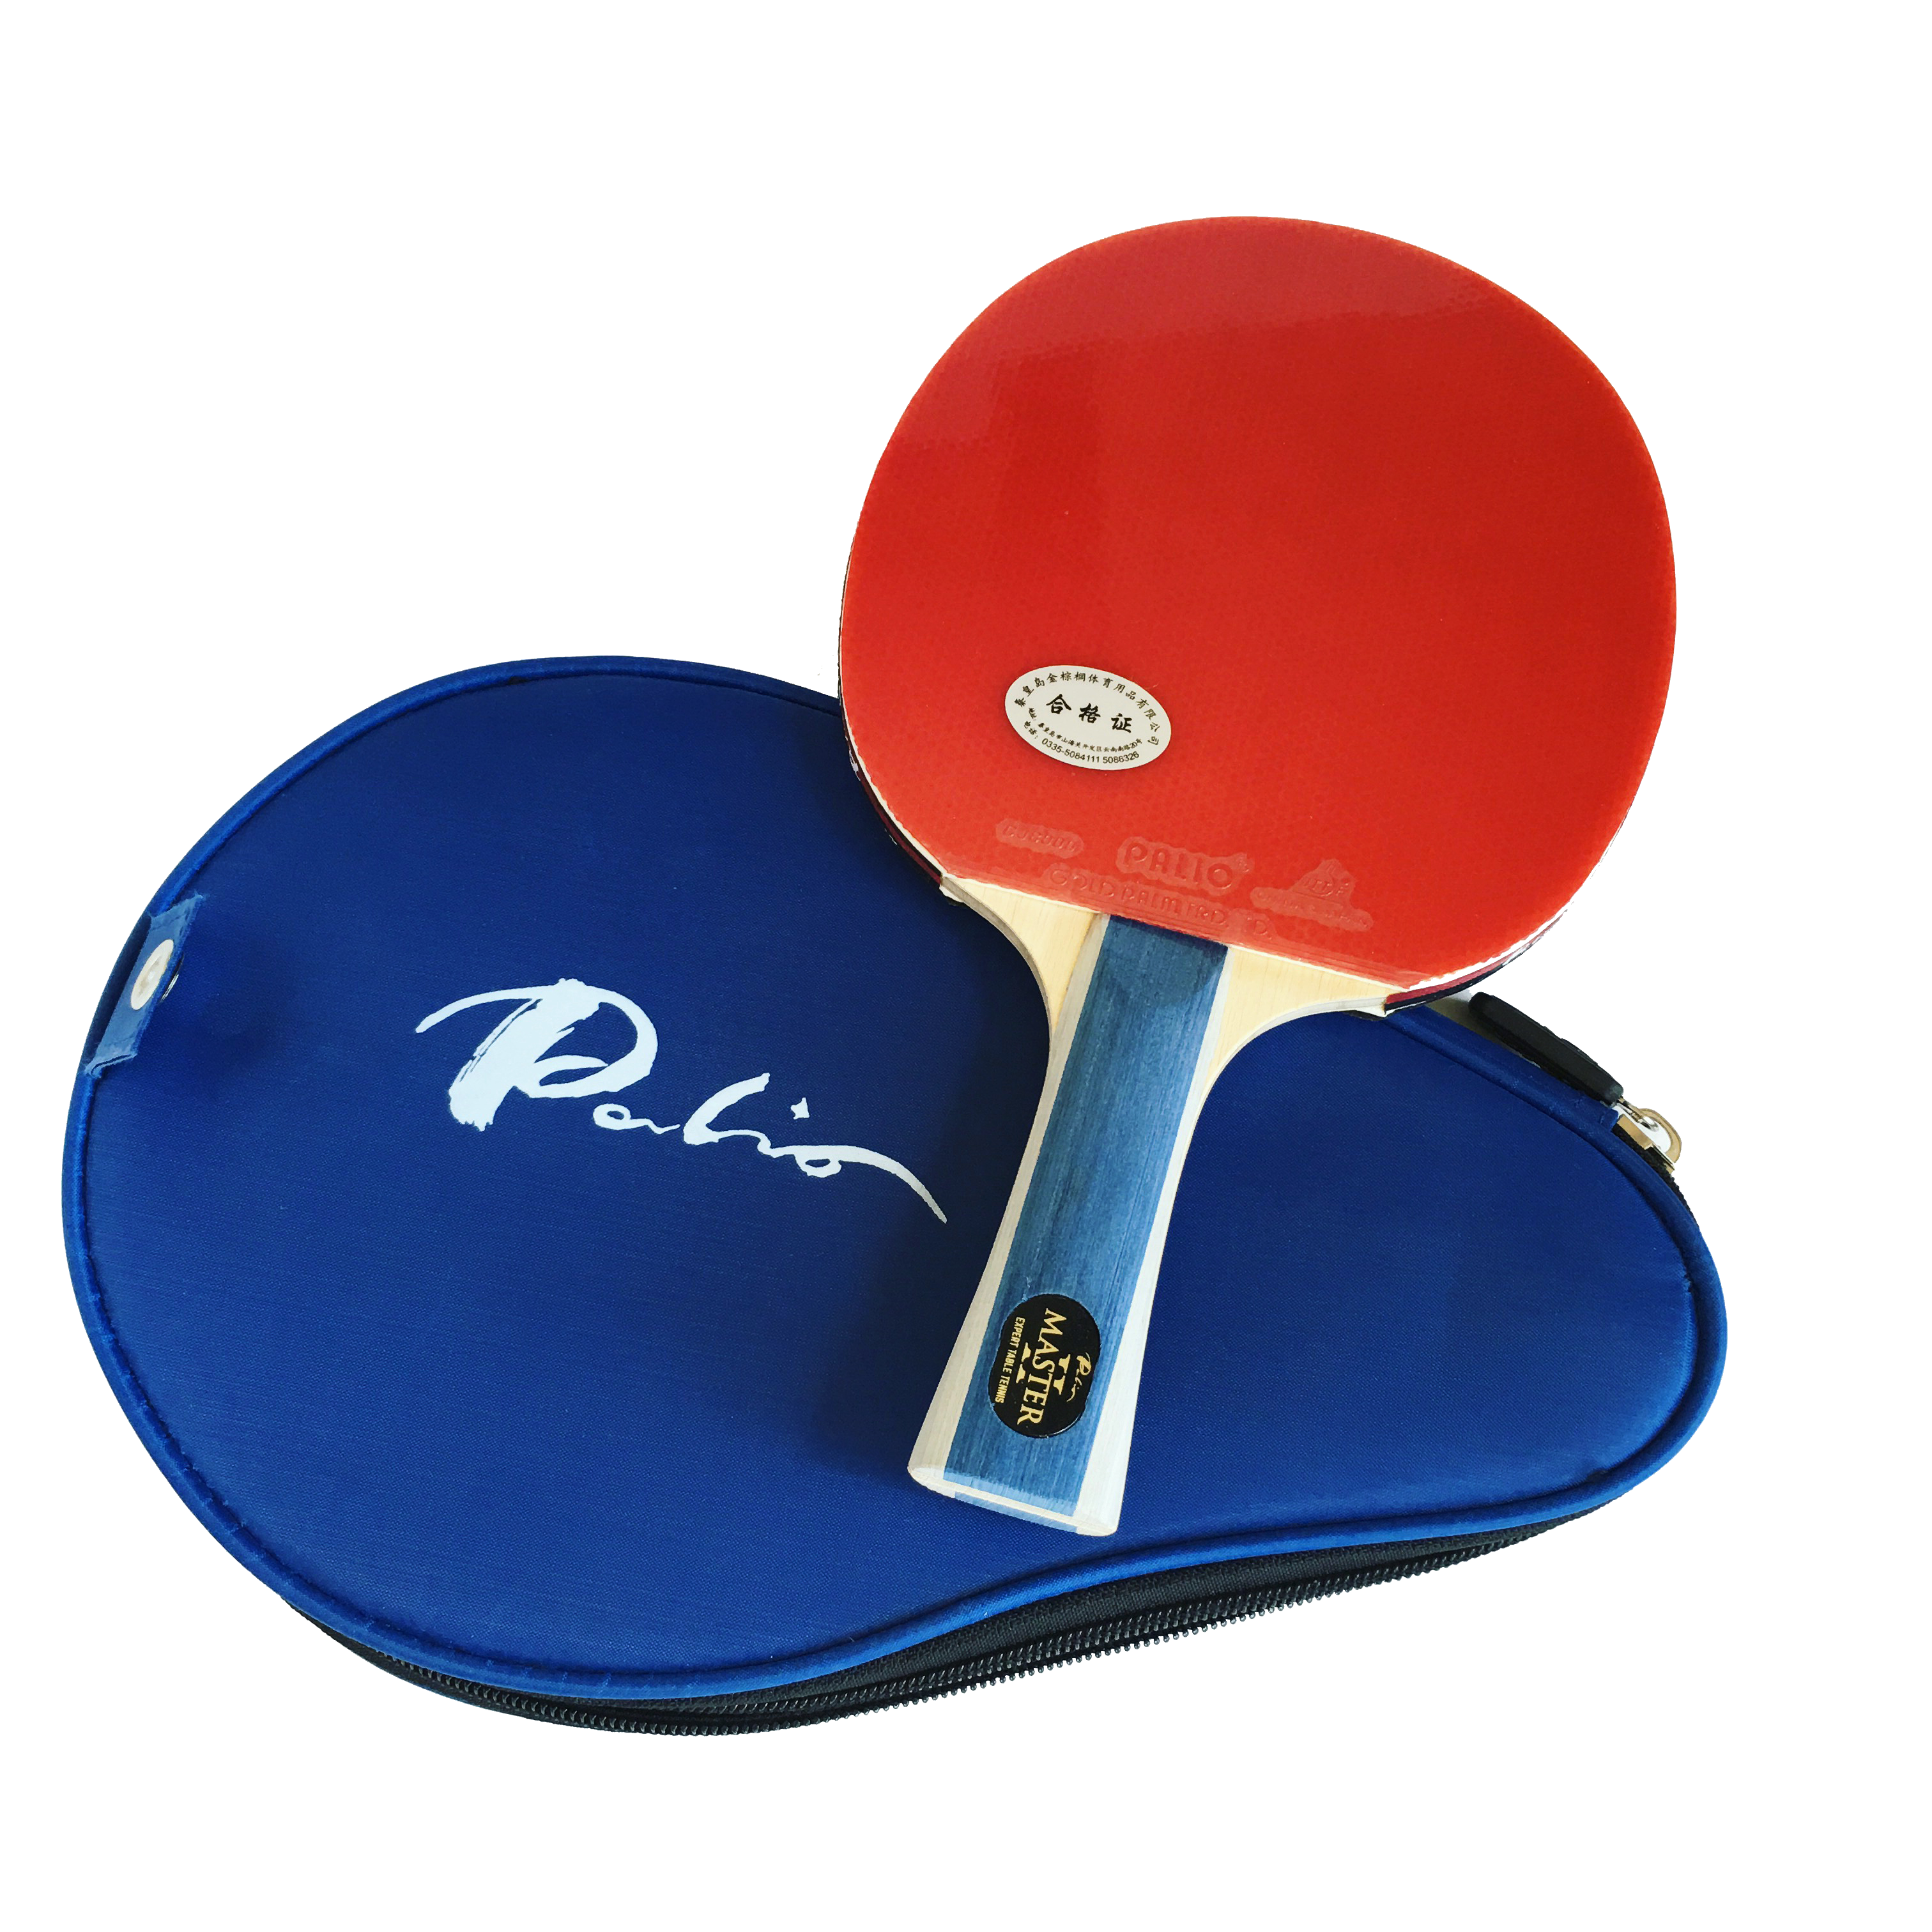 PALIO esperto 3.0 Ping-pong Mazza E CASE-ITTF Approvato Principiante Ping Pong 